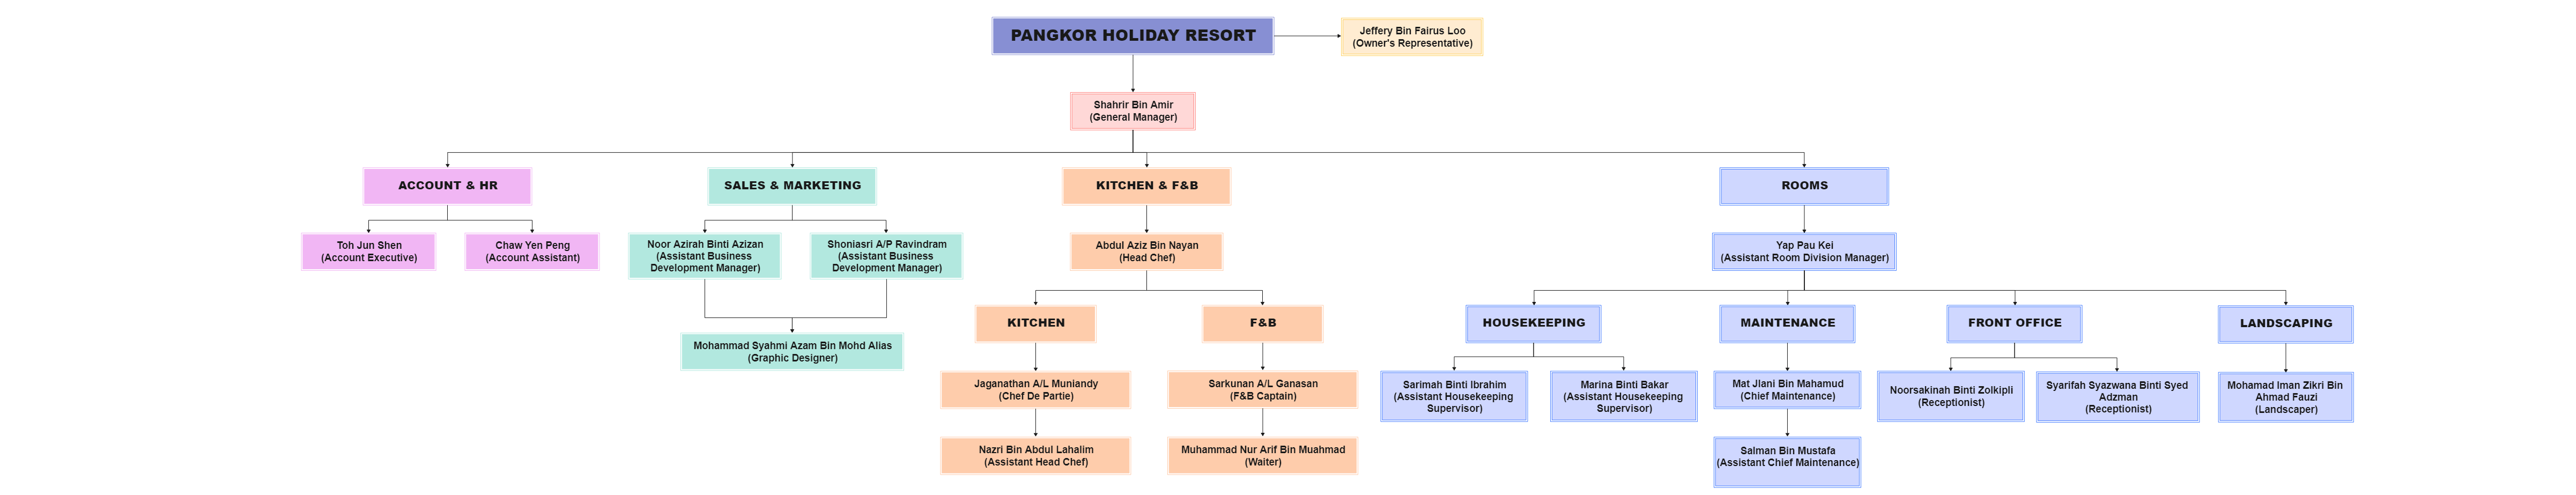 Pangkor Holiday Resort Org Chart